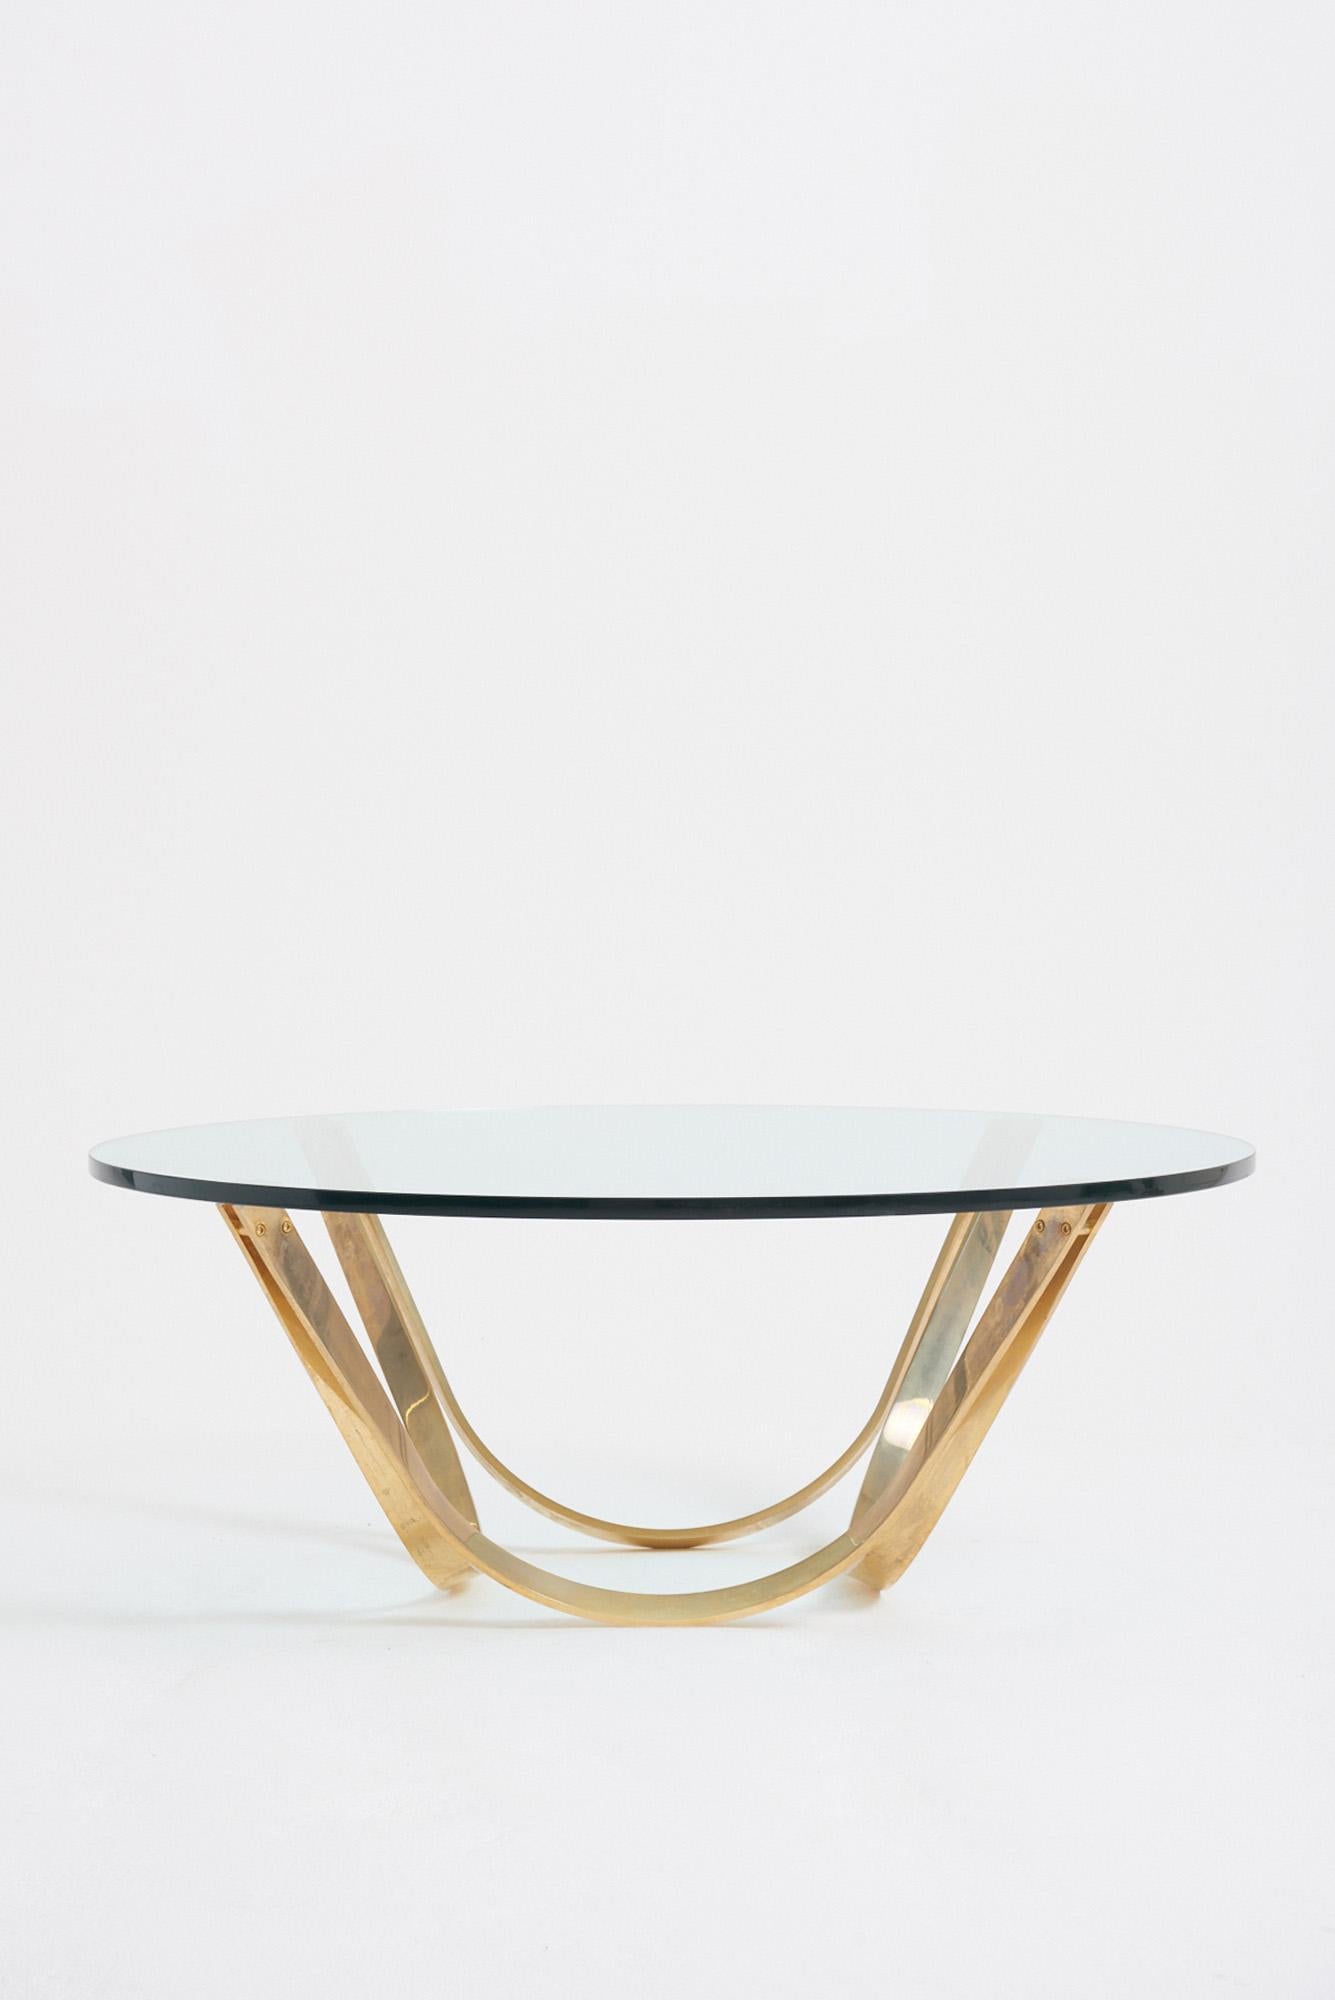 Swedish Circular Glass Top Coffee Table